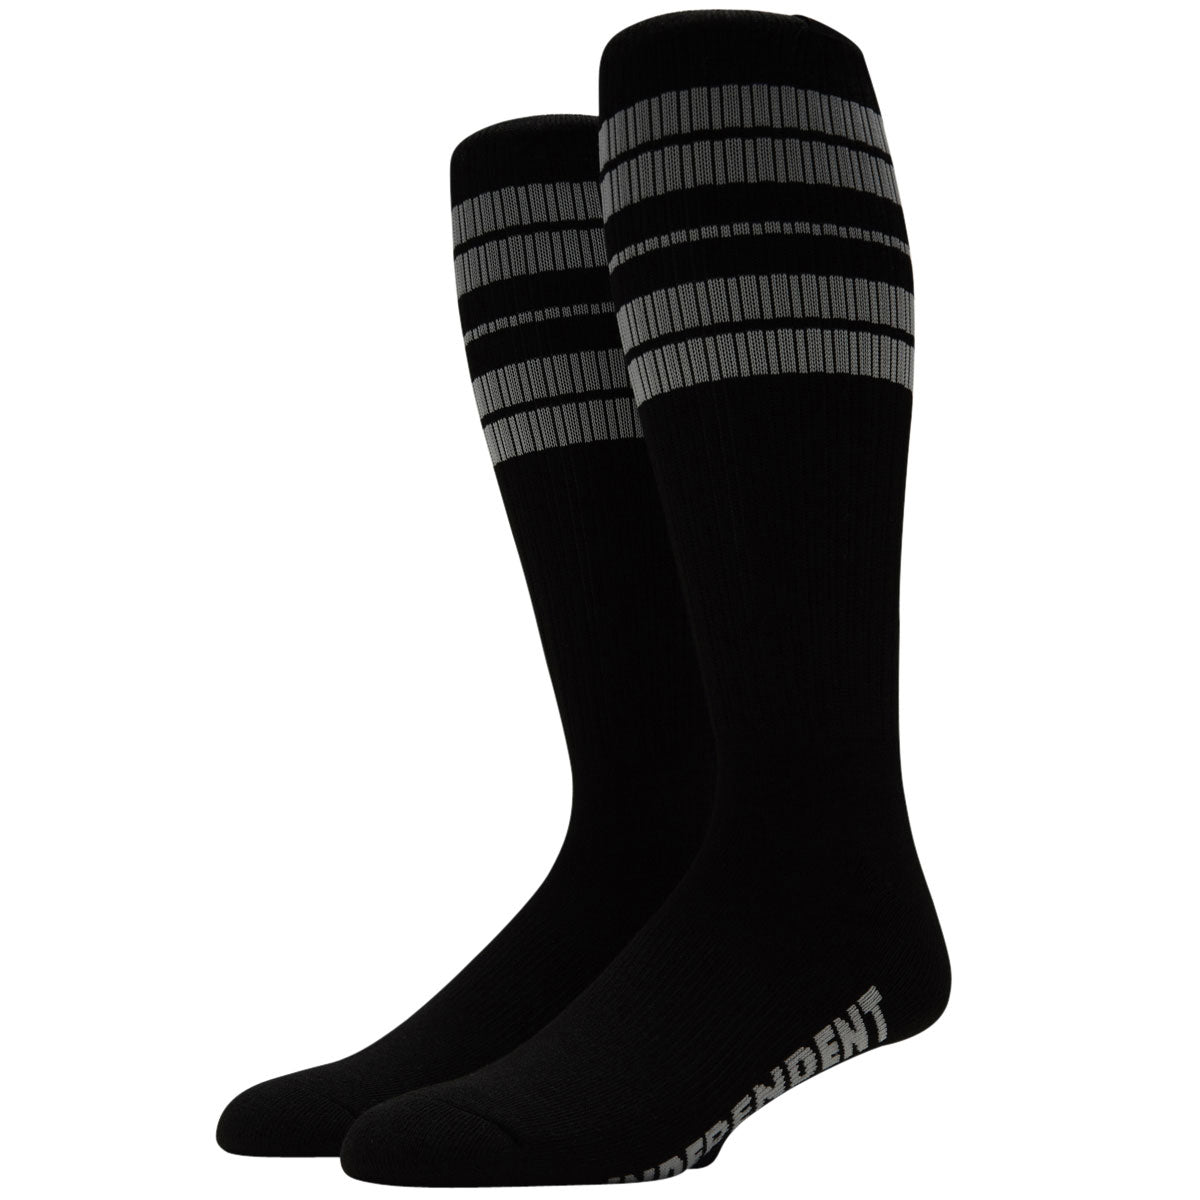 Independent Osage Crew Socks - Black/Grey image 1